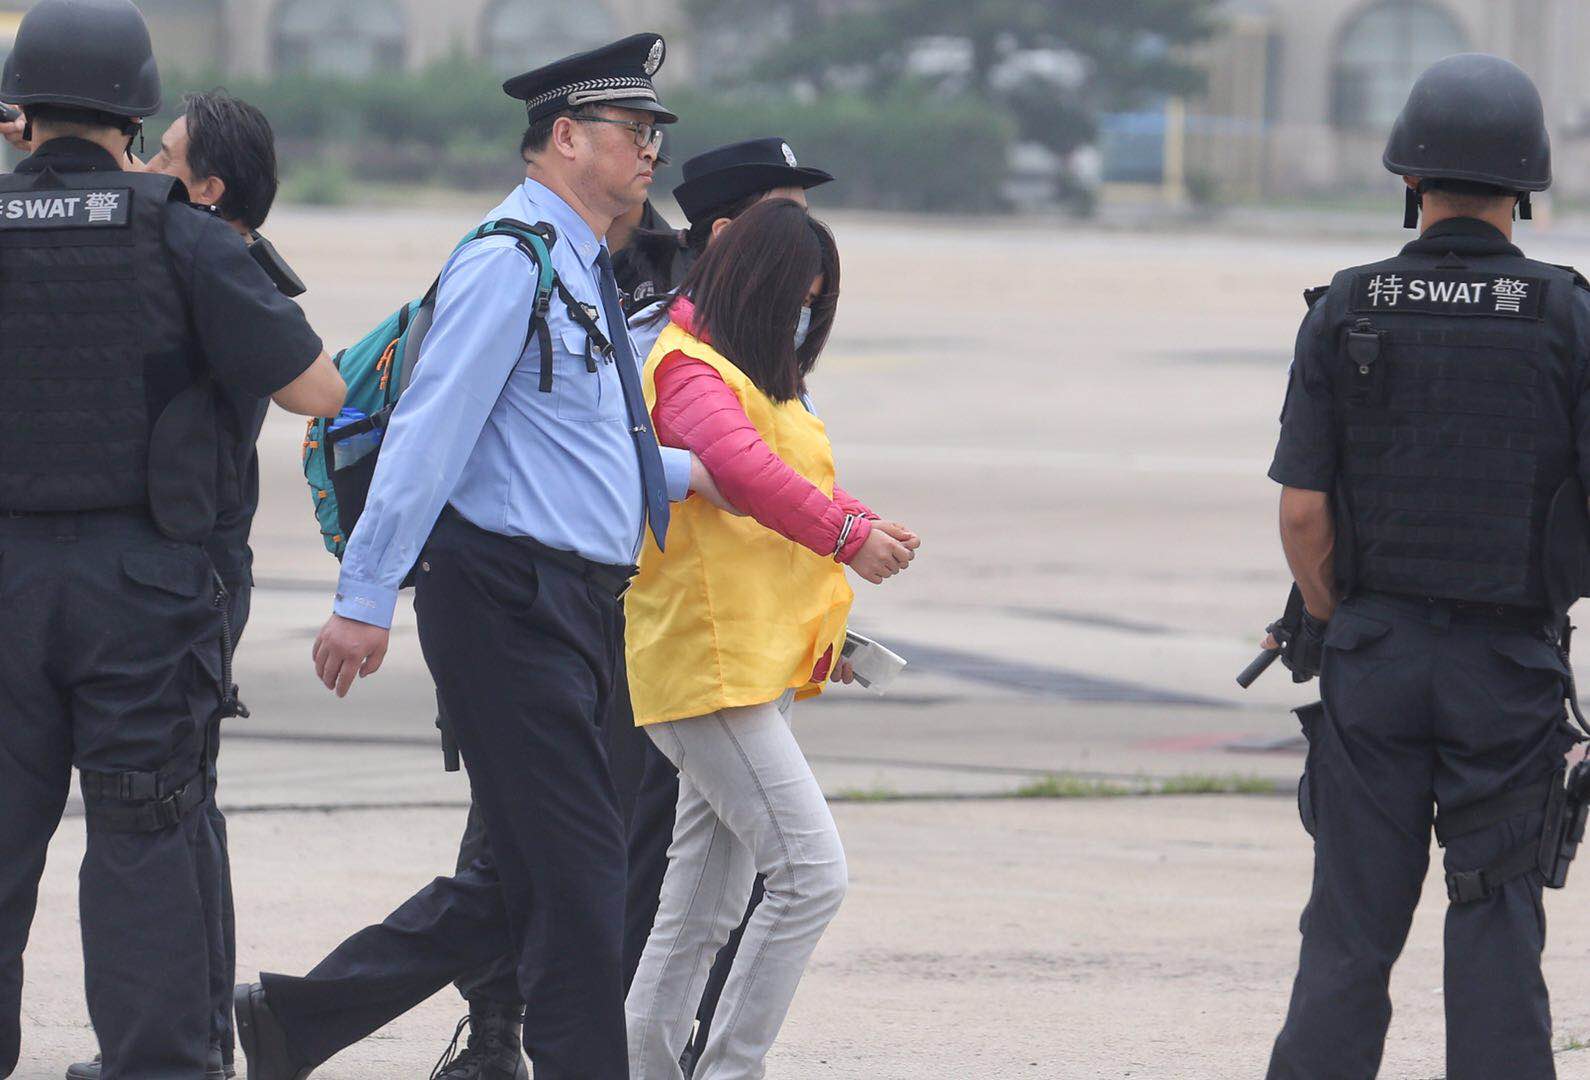 6月7日A中國從西班牙押解回國94名詐騙犯罪嫌疑人C